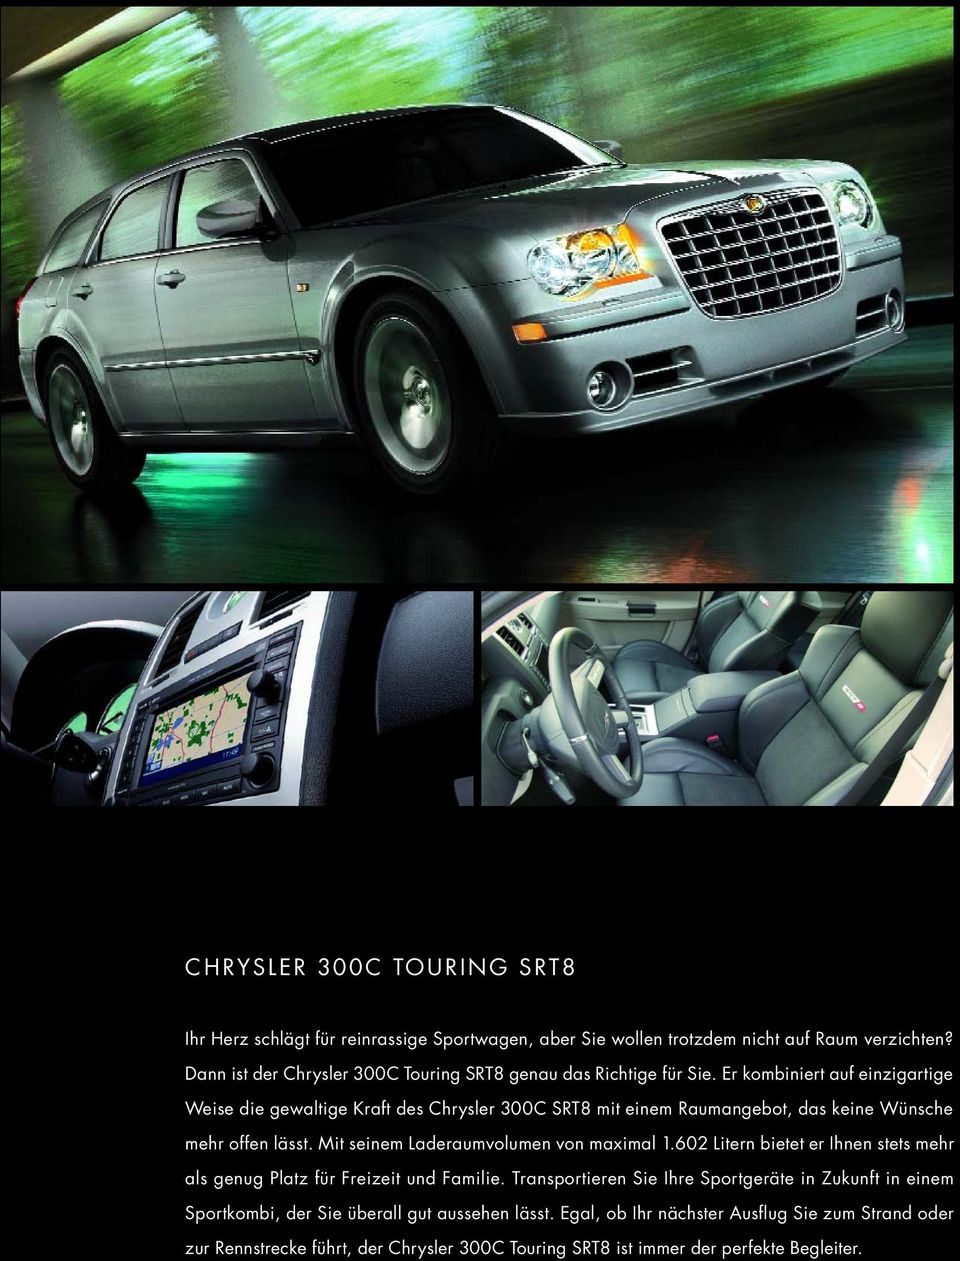 Er kombiniert auf einzigartige Weise die gewaltige Kraft des Chrysler 300C SRT8 mit einem Raumangebot, das keine Wünsche mehr offen lässt.